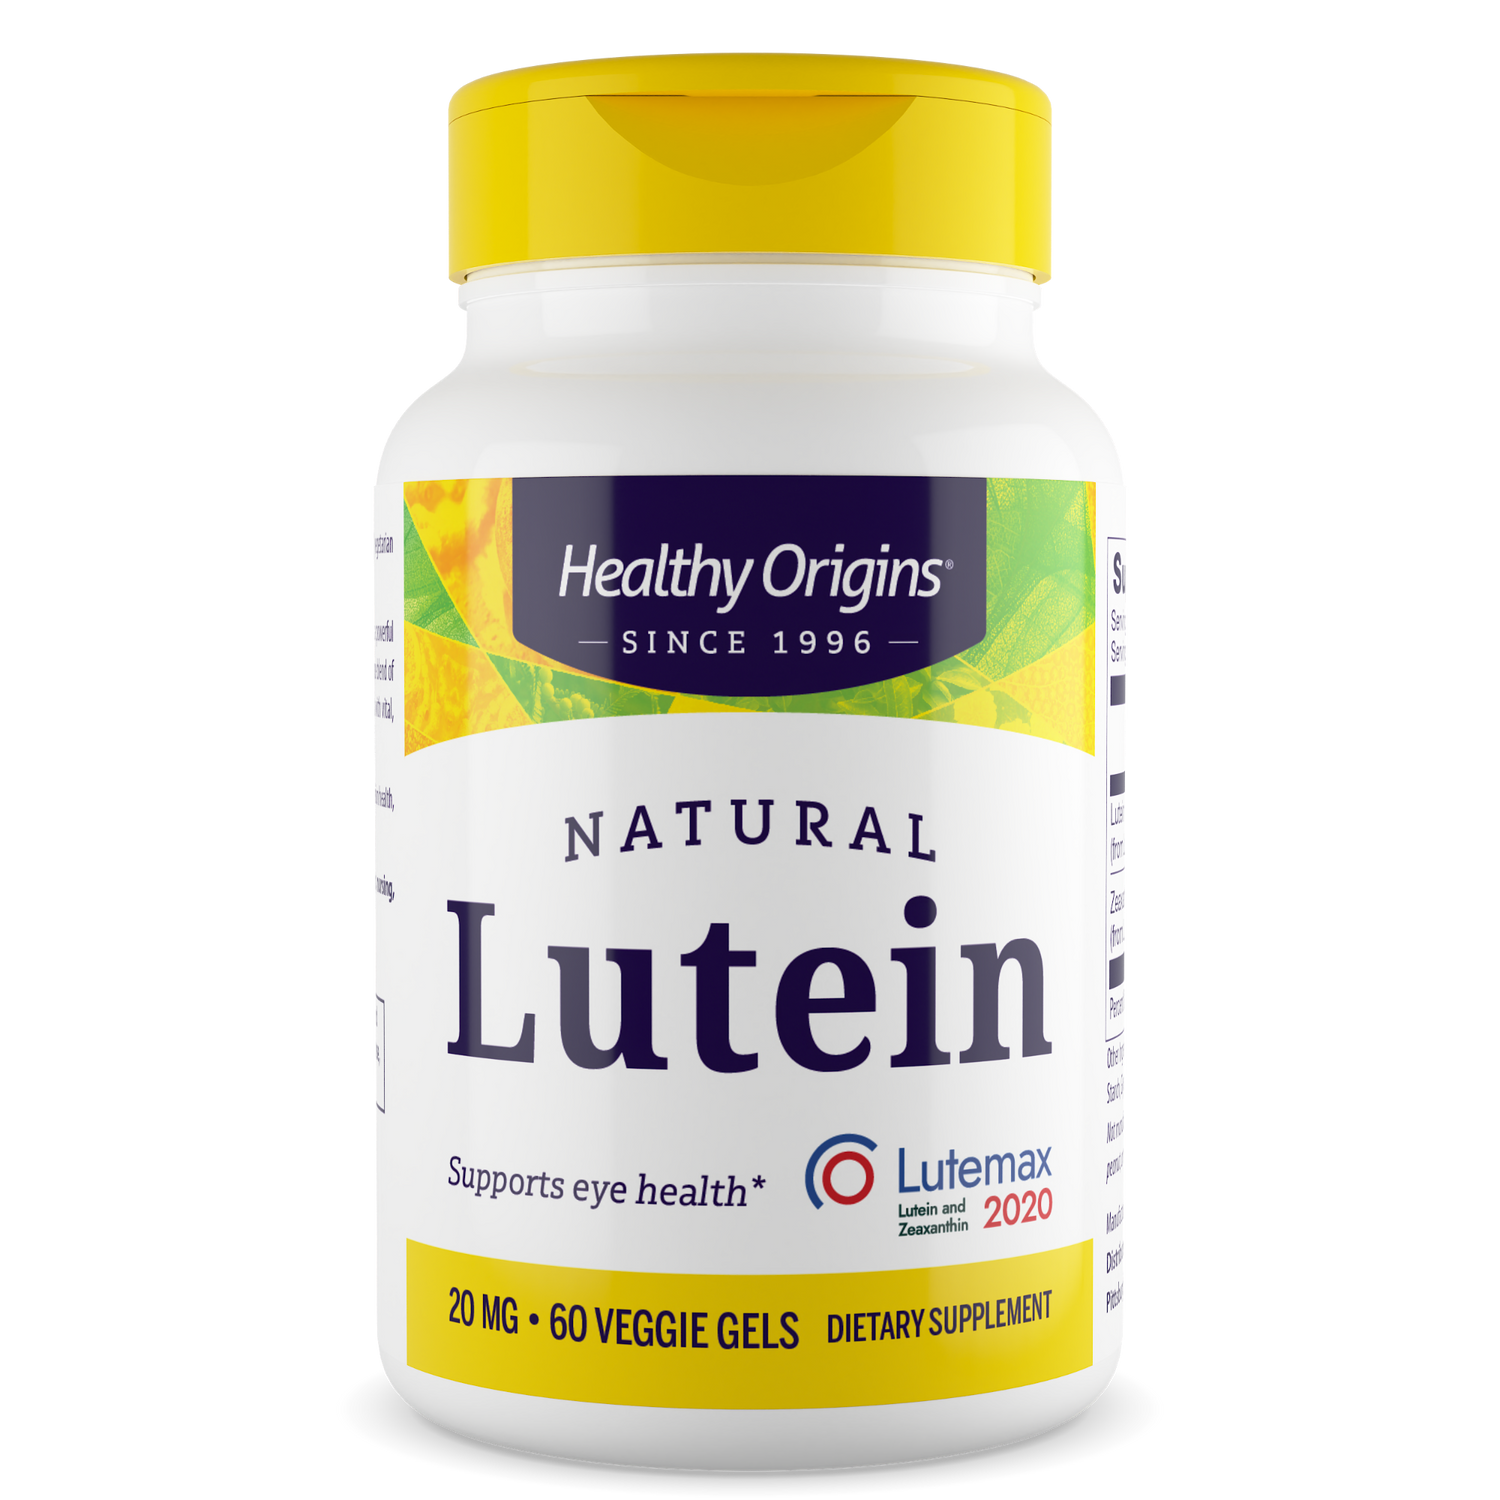 Lutein (Lutemax® 2020)